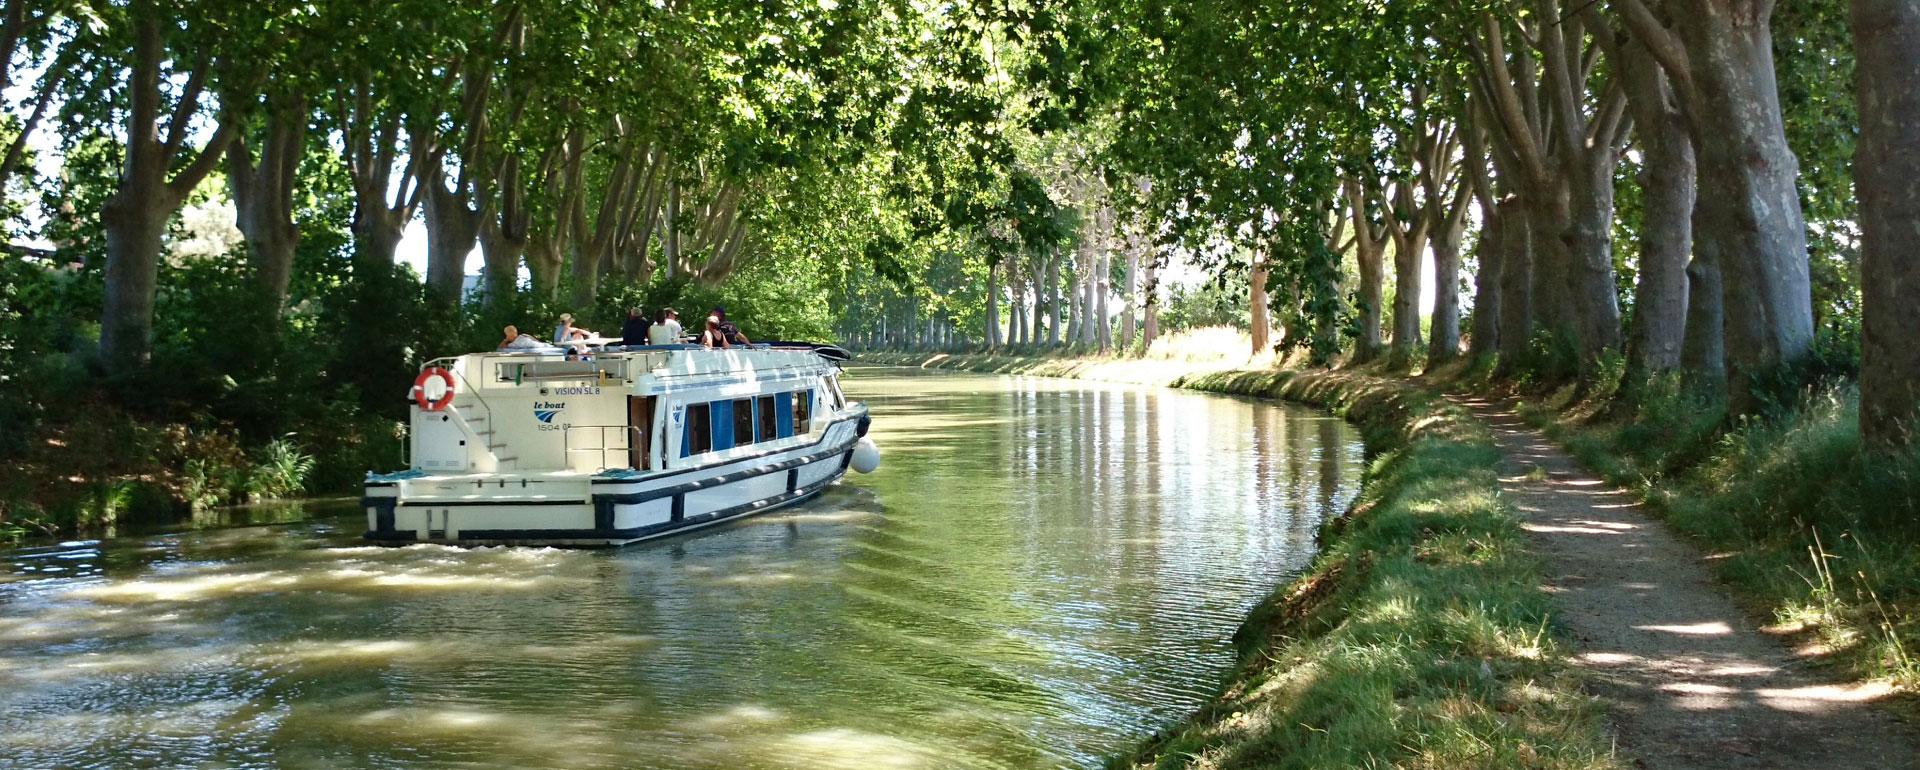 Le Canal du Midi - Occitanie © E.Brendle